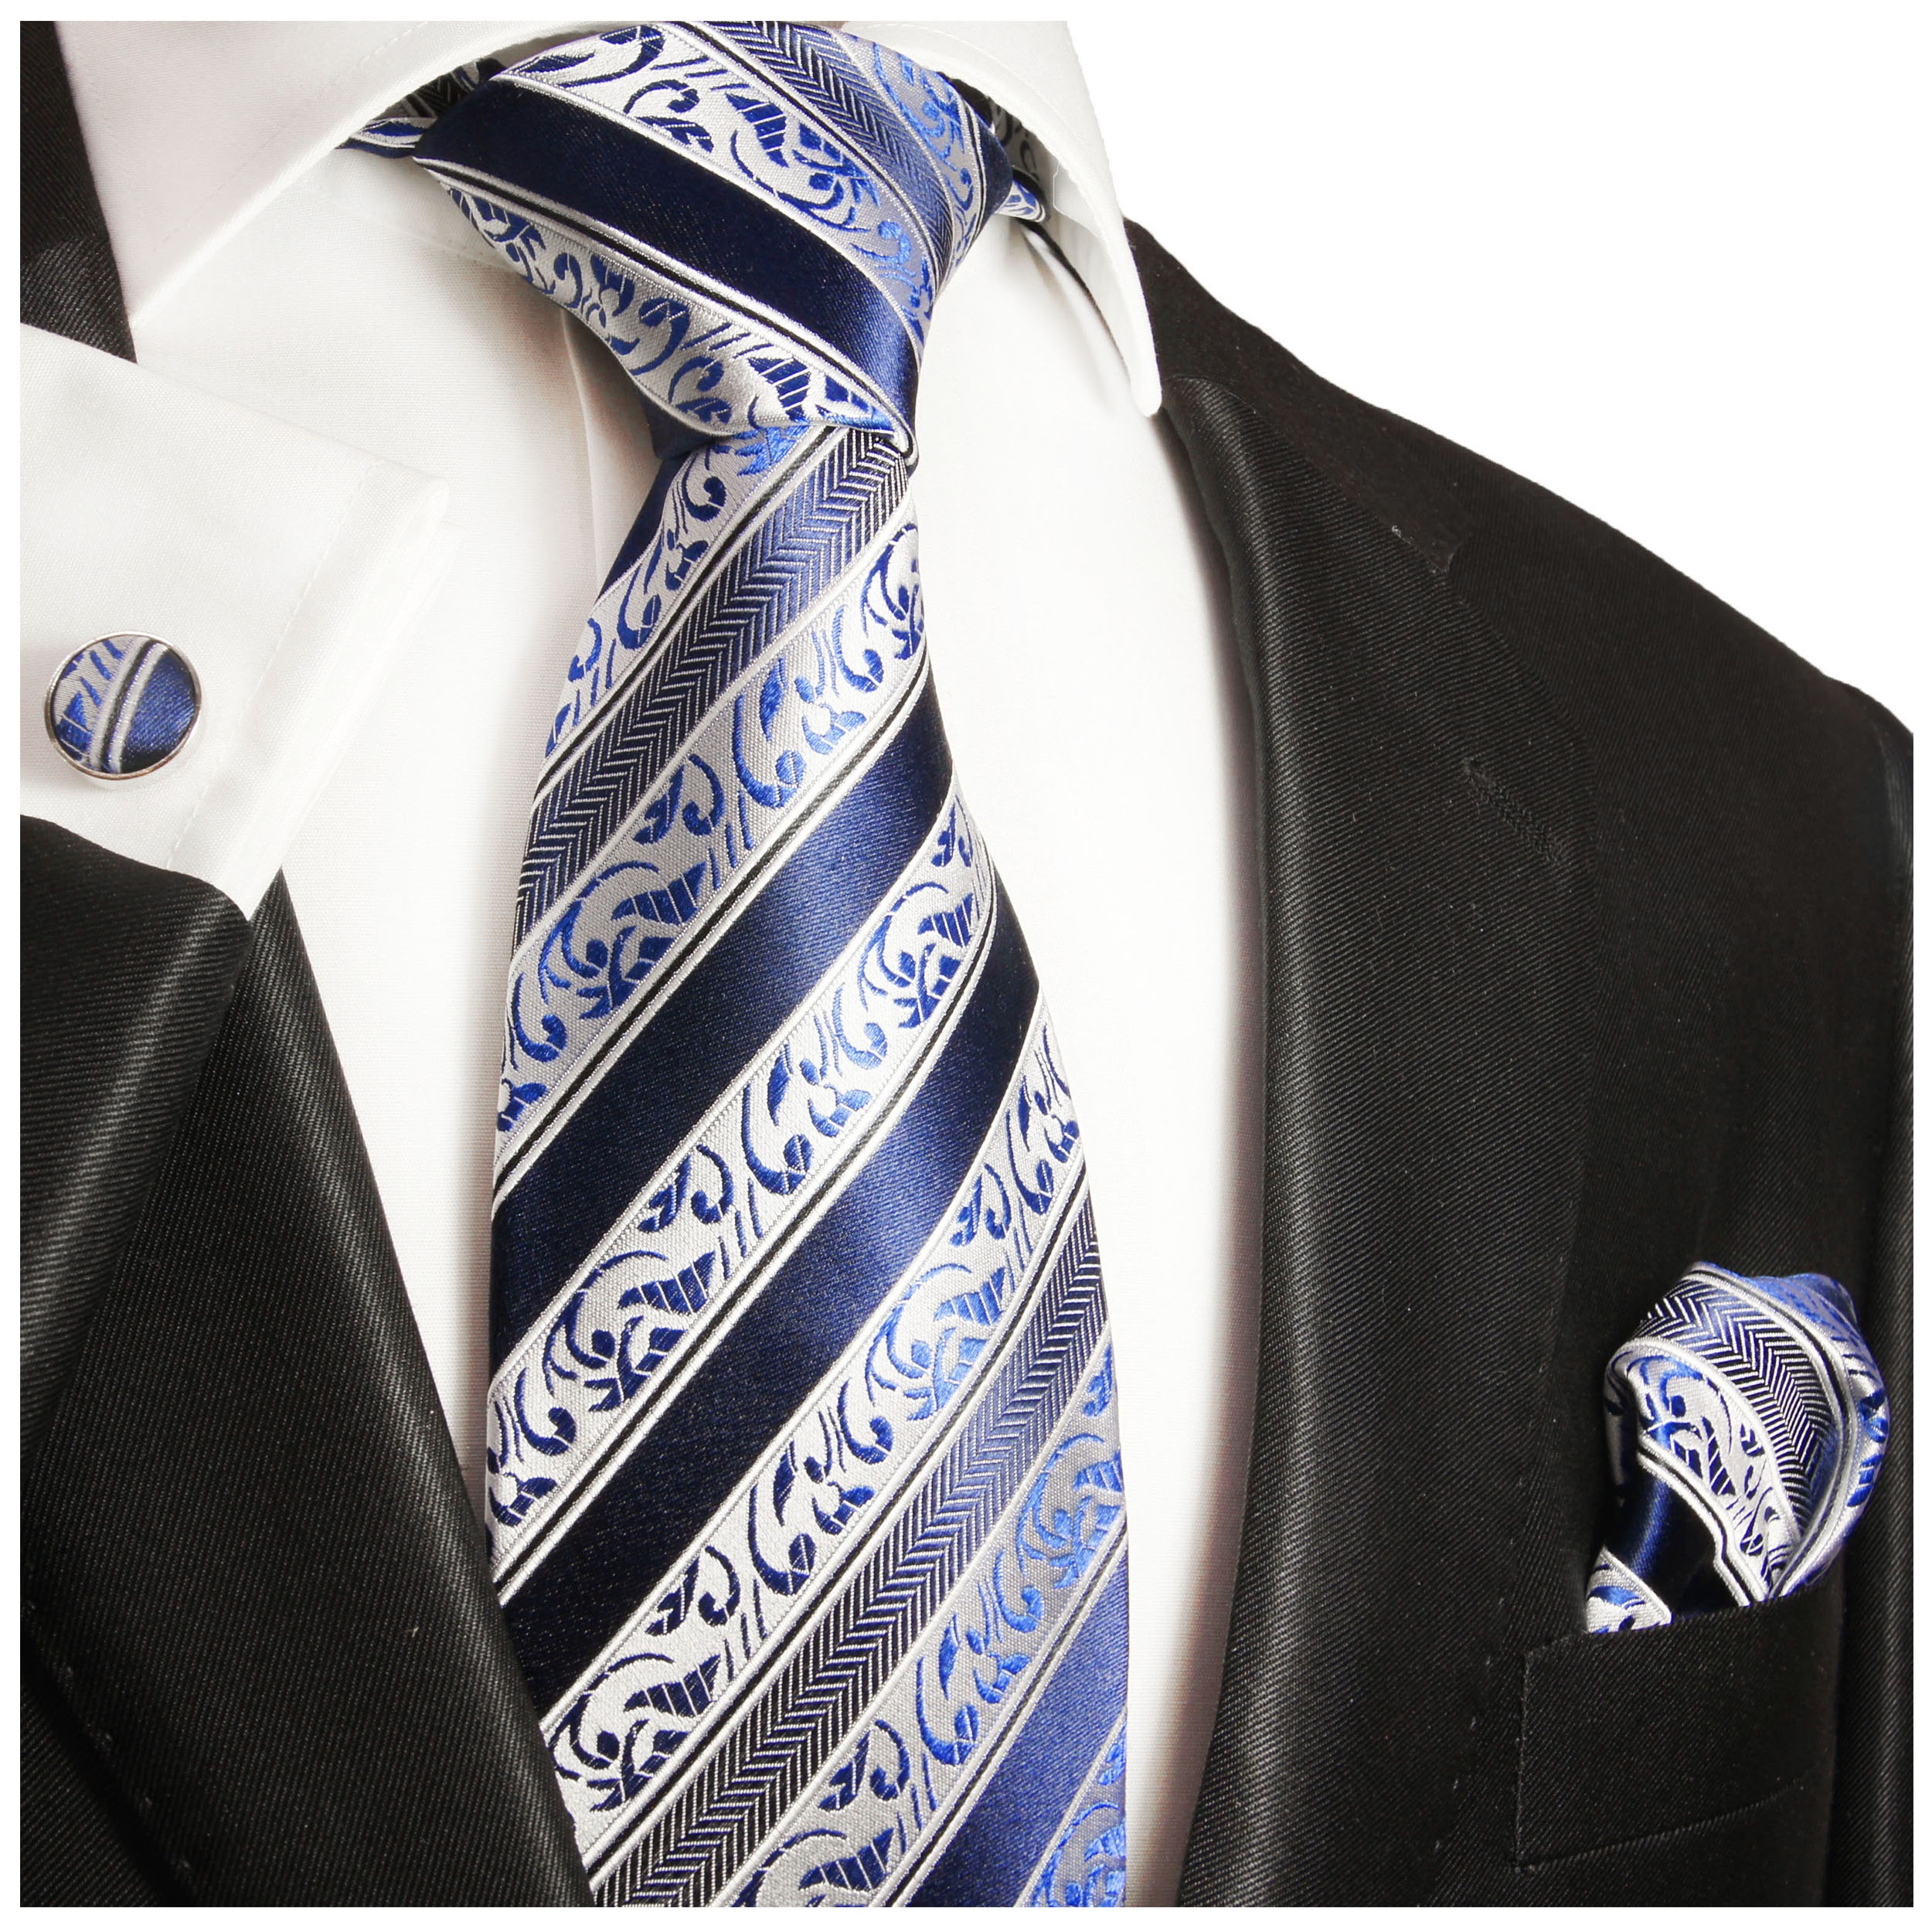 Paul Malone blaue Krawatte blau barock gestreifte Seidenkrawatte 855